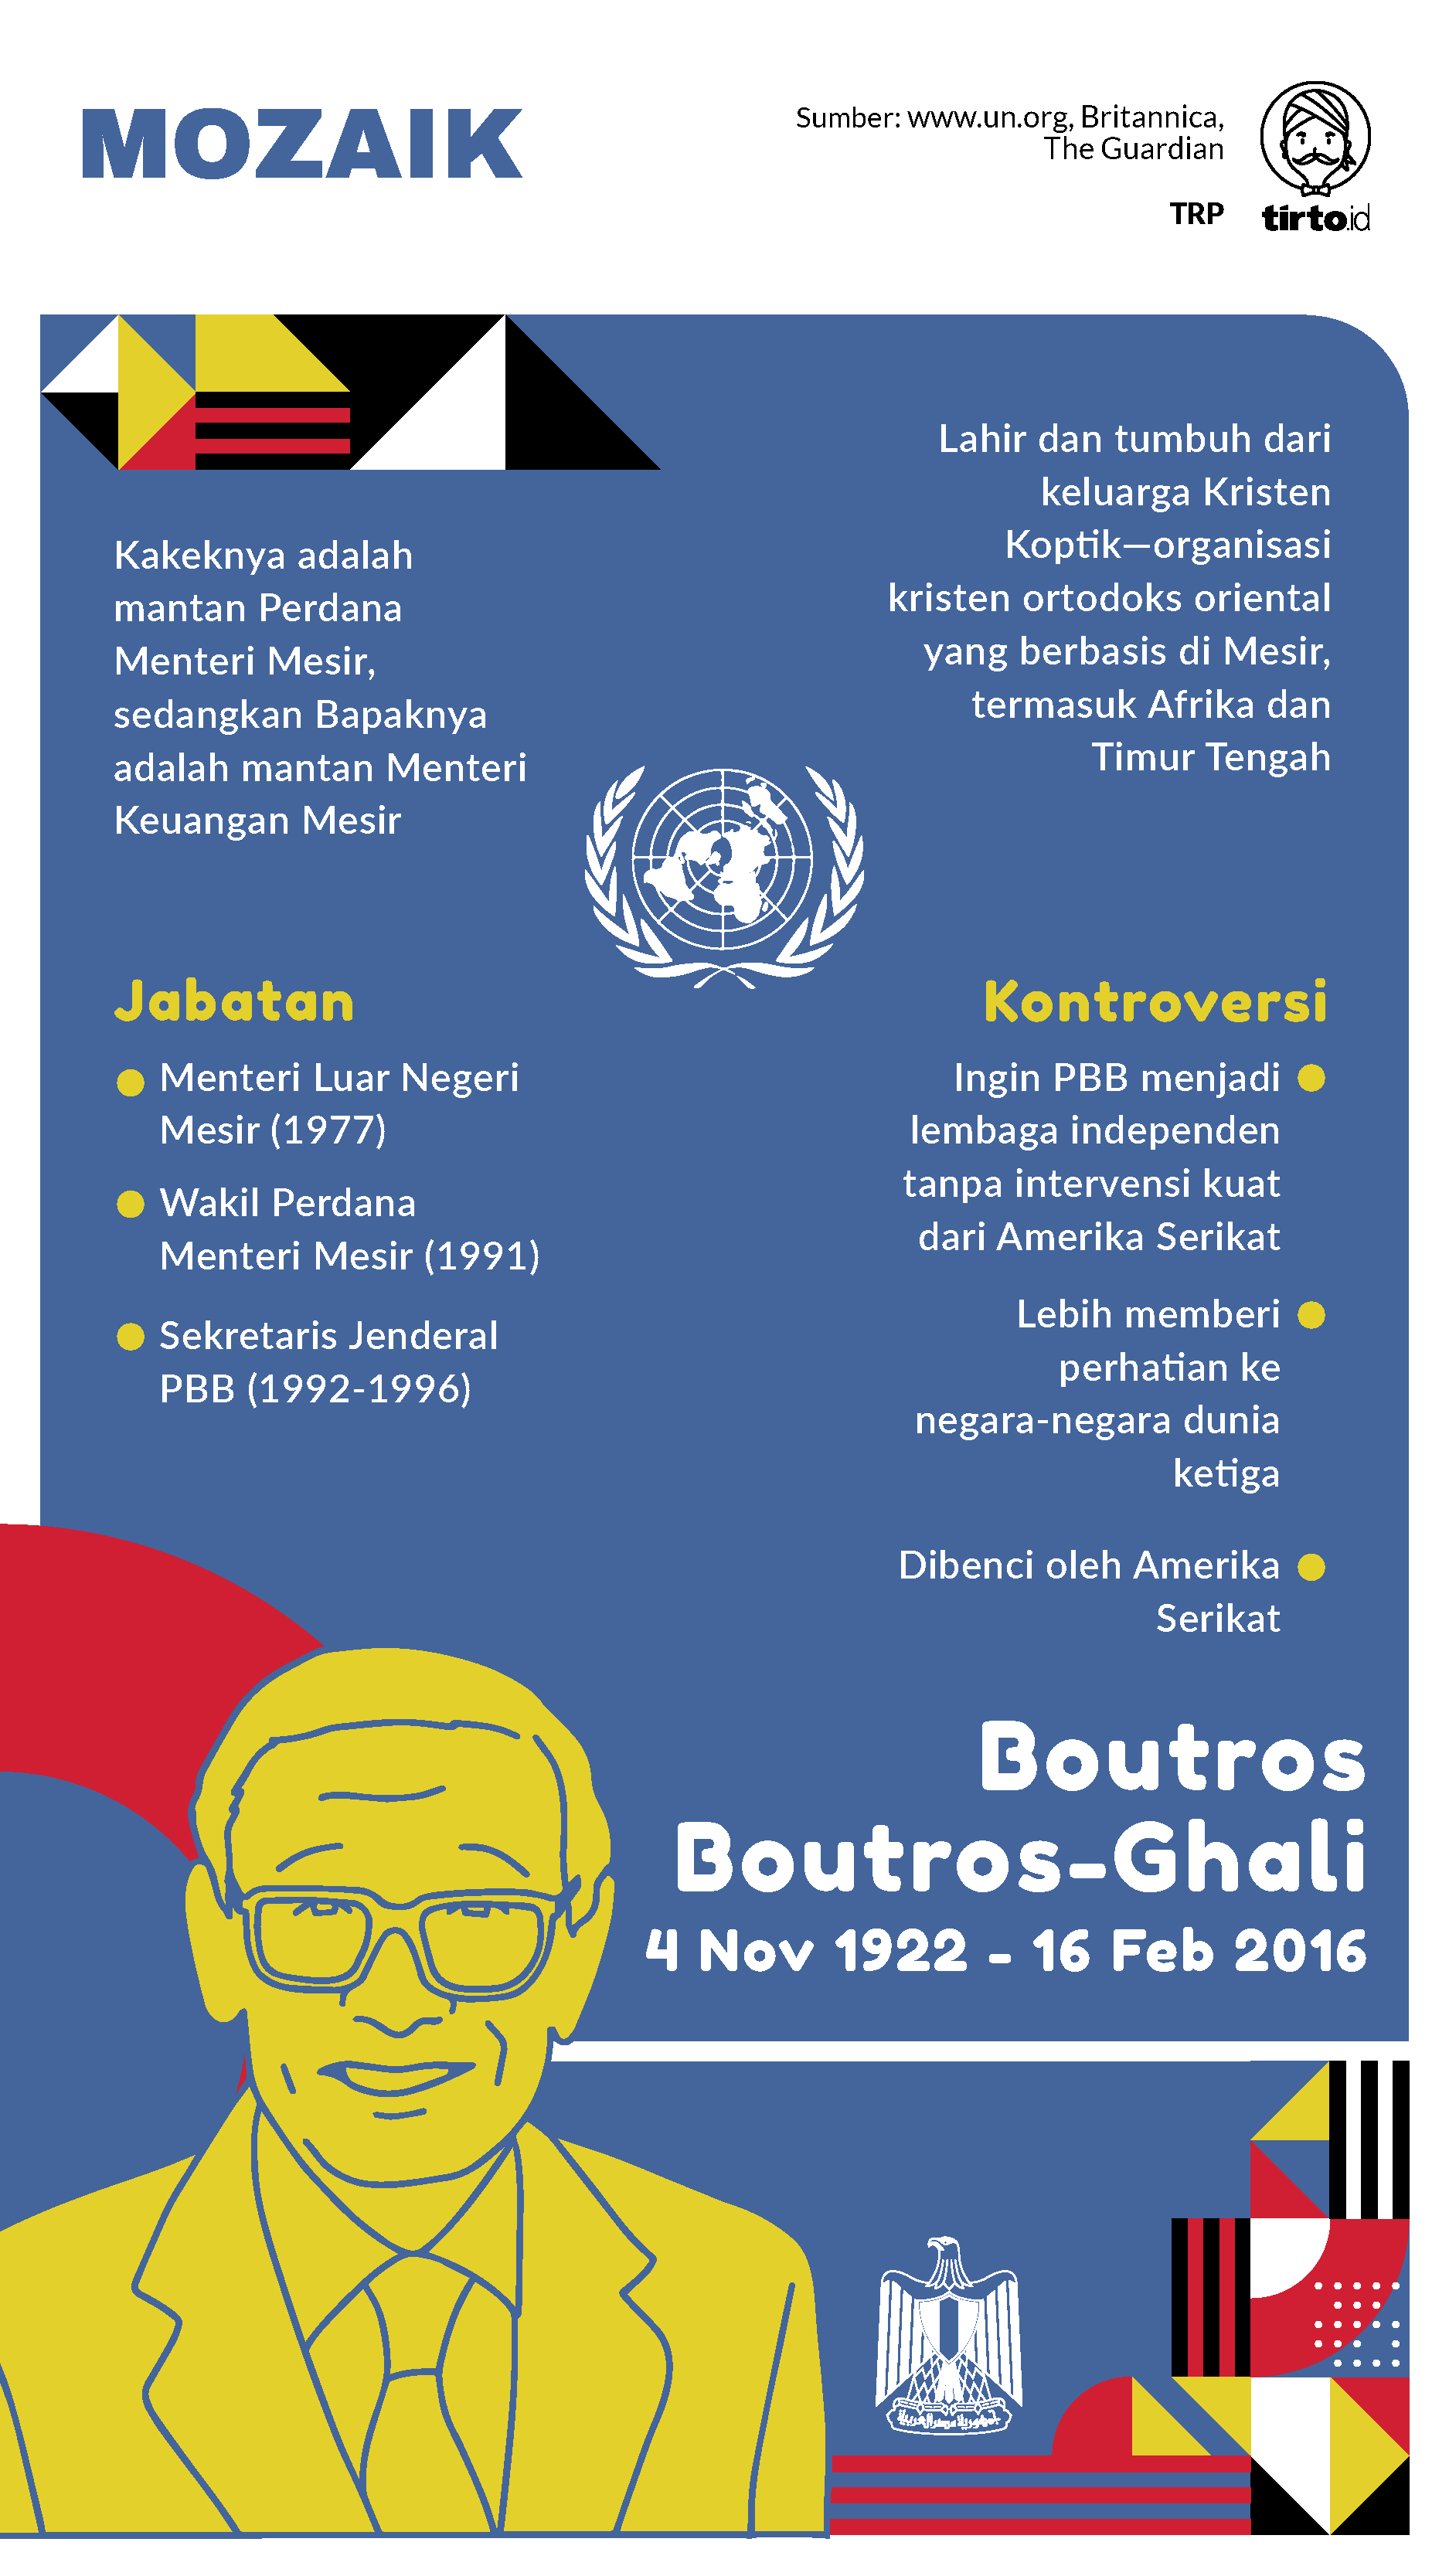 Infografik Mozaik Boutros Boutros Ghali